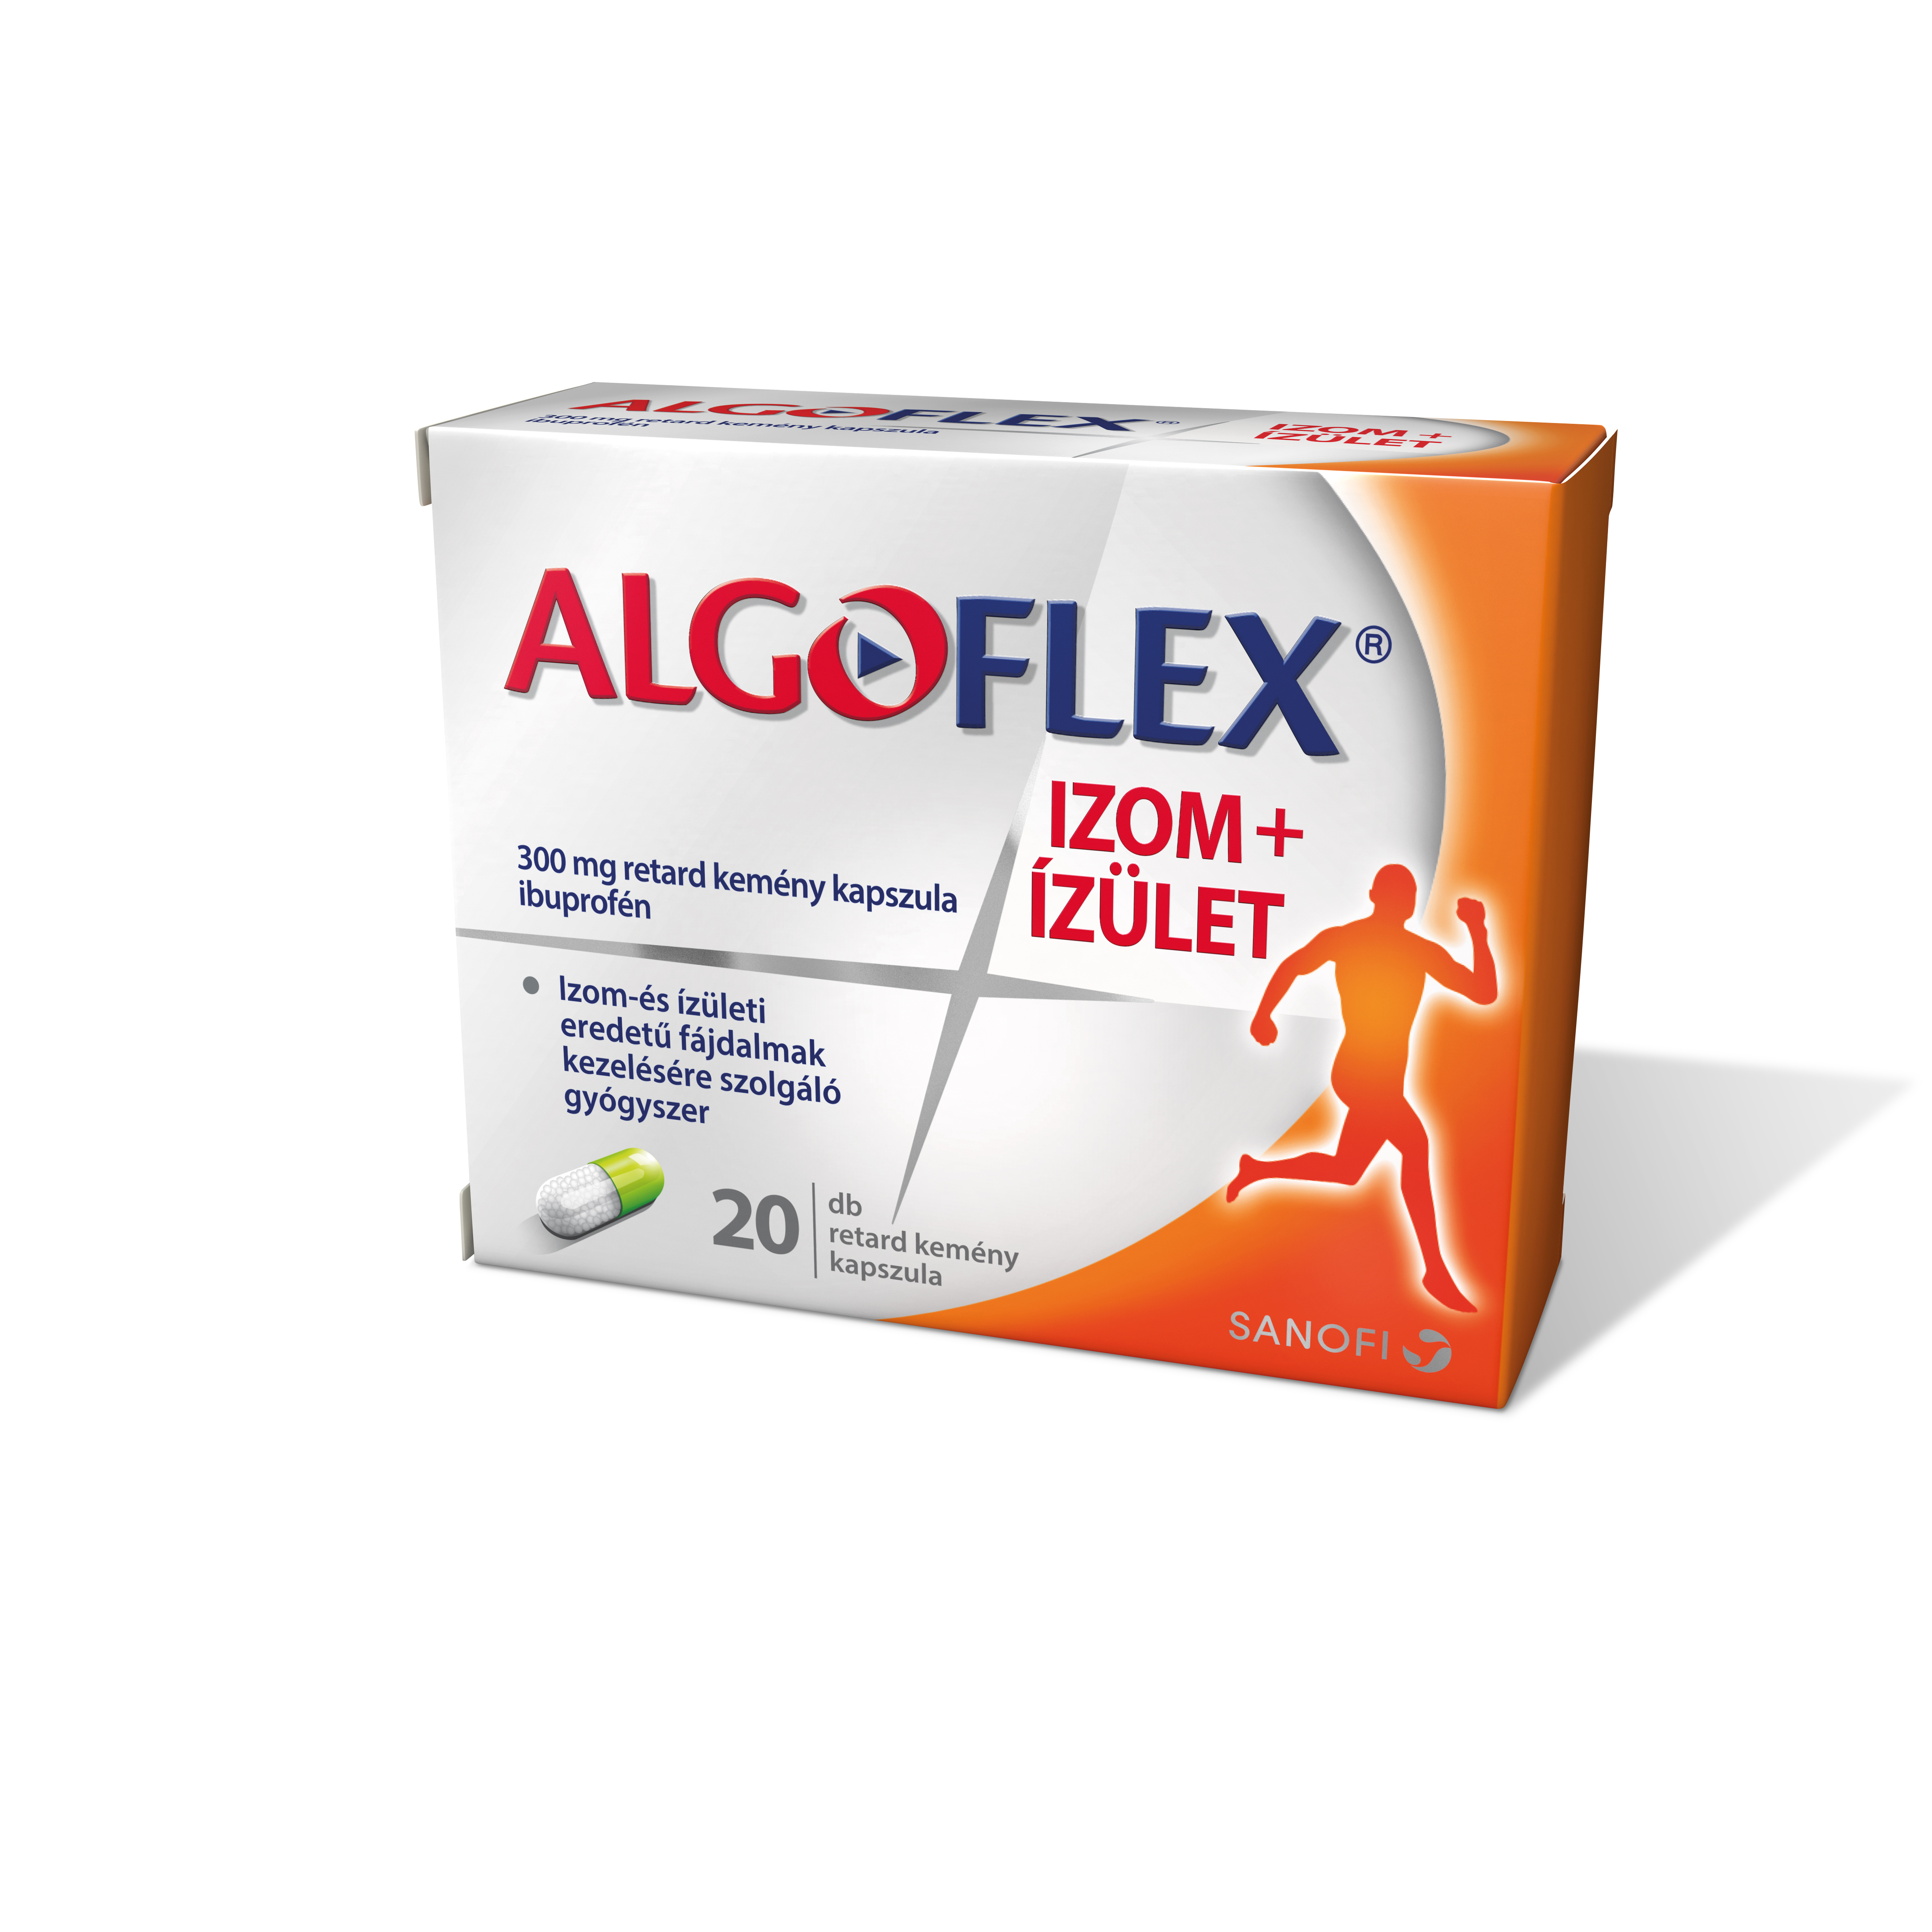 Algoflex Izom+Ízület 300mg retard kemény kapszula 20x